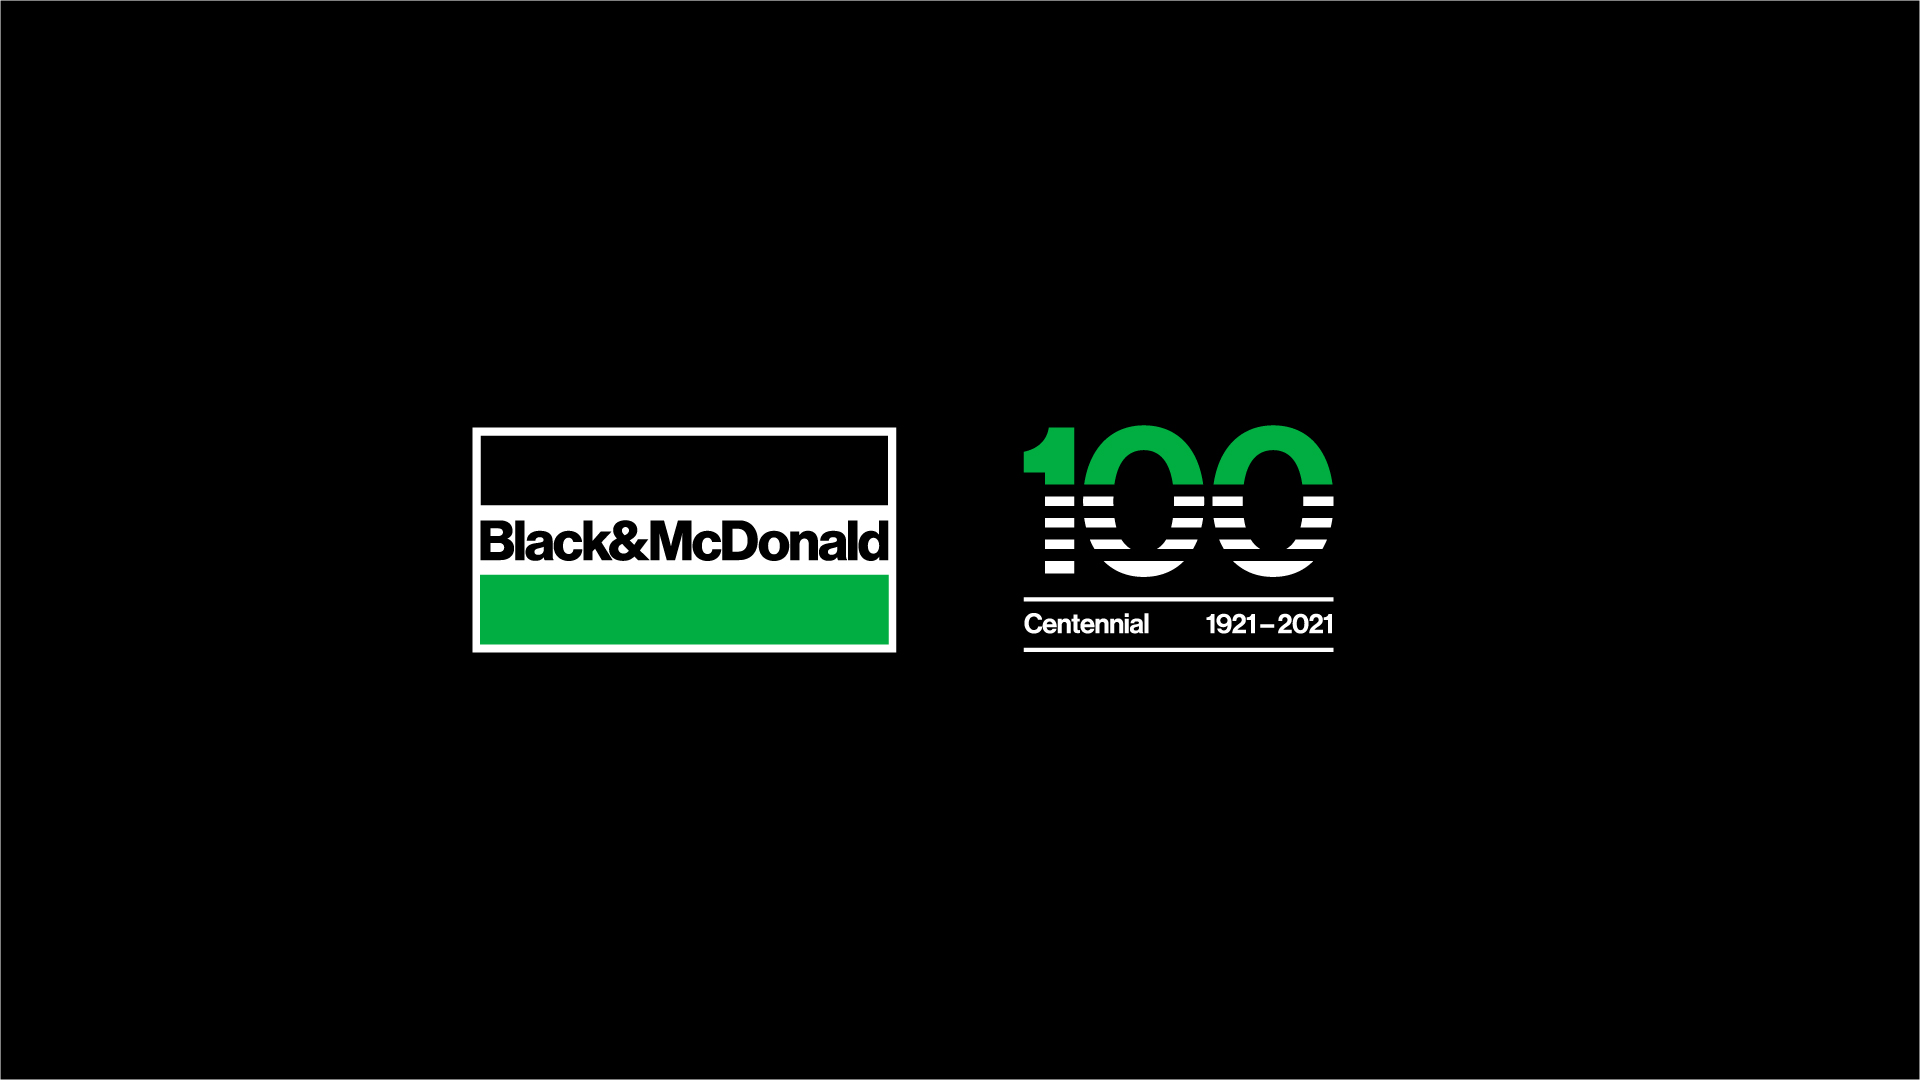 Black & McDonald logo and centennial logo on black screen